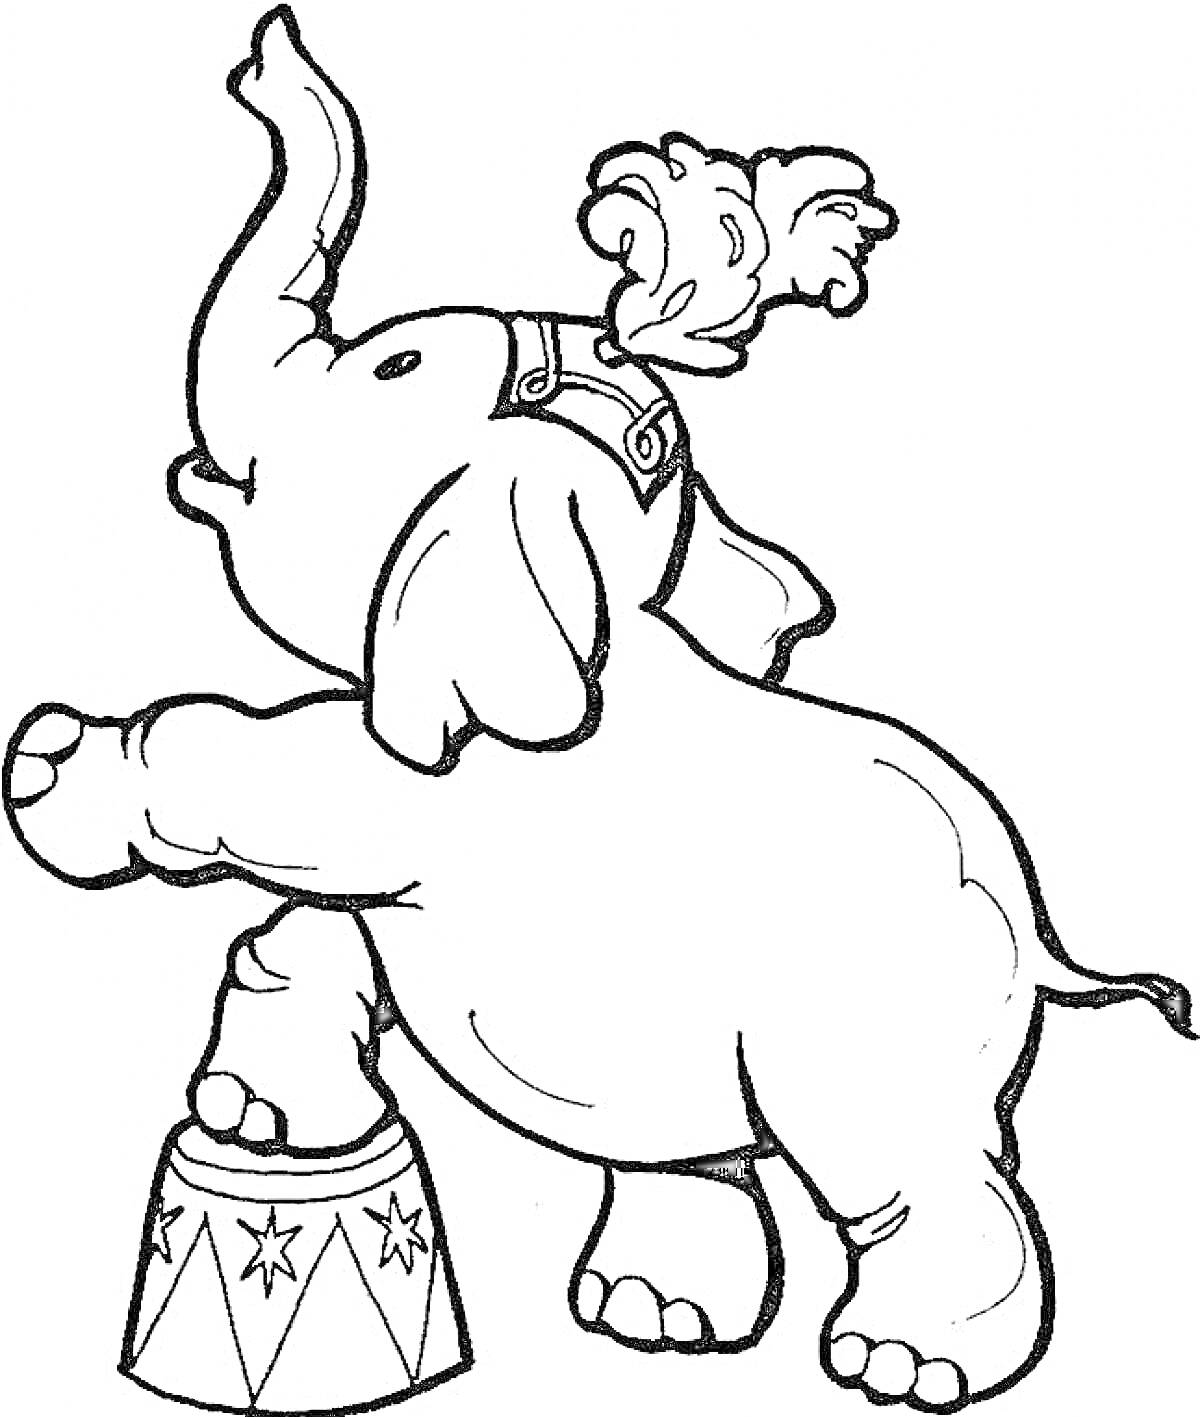 Слон на тумбе в цирковом костюме